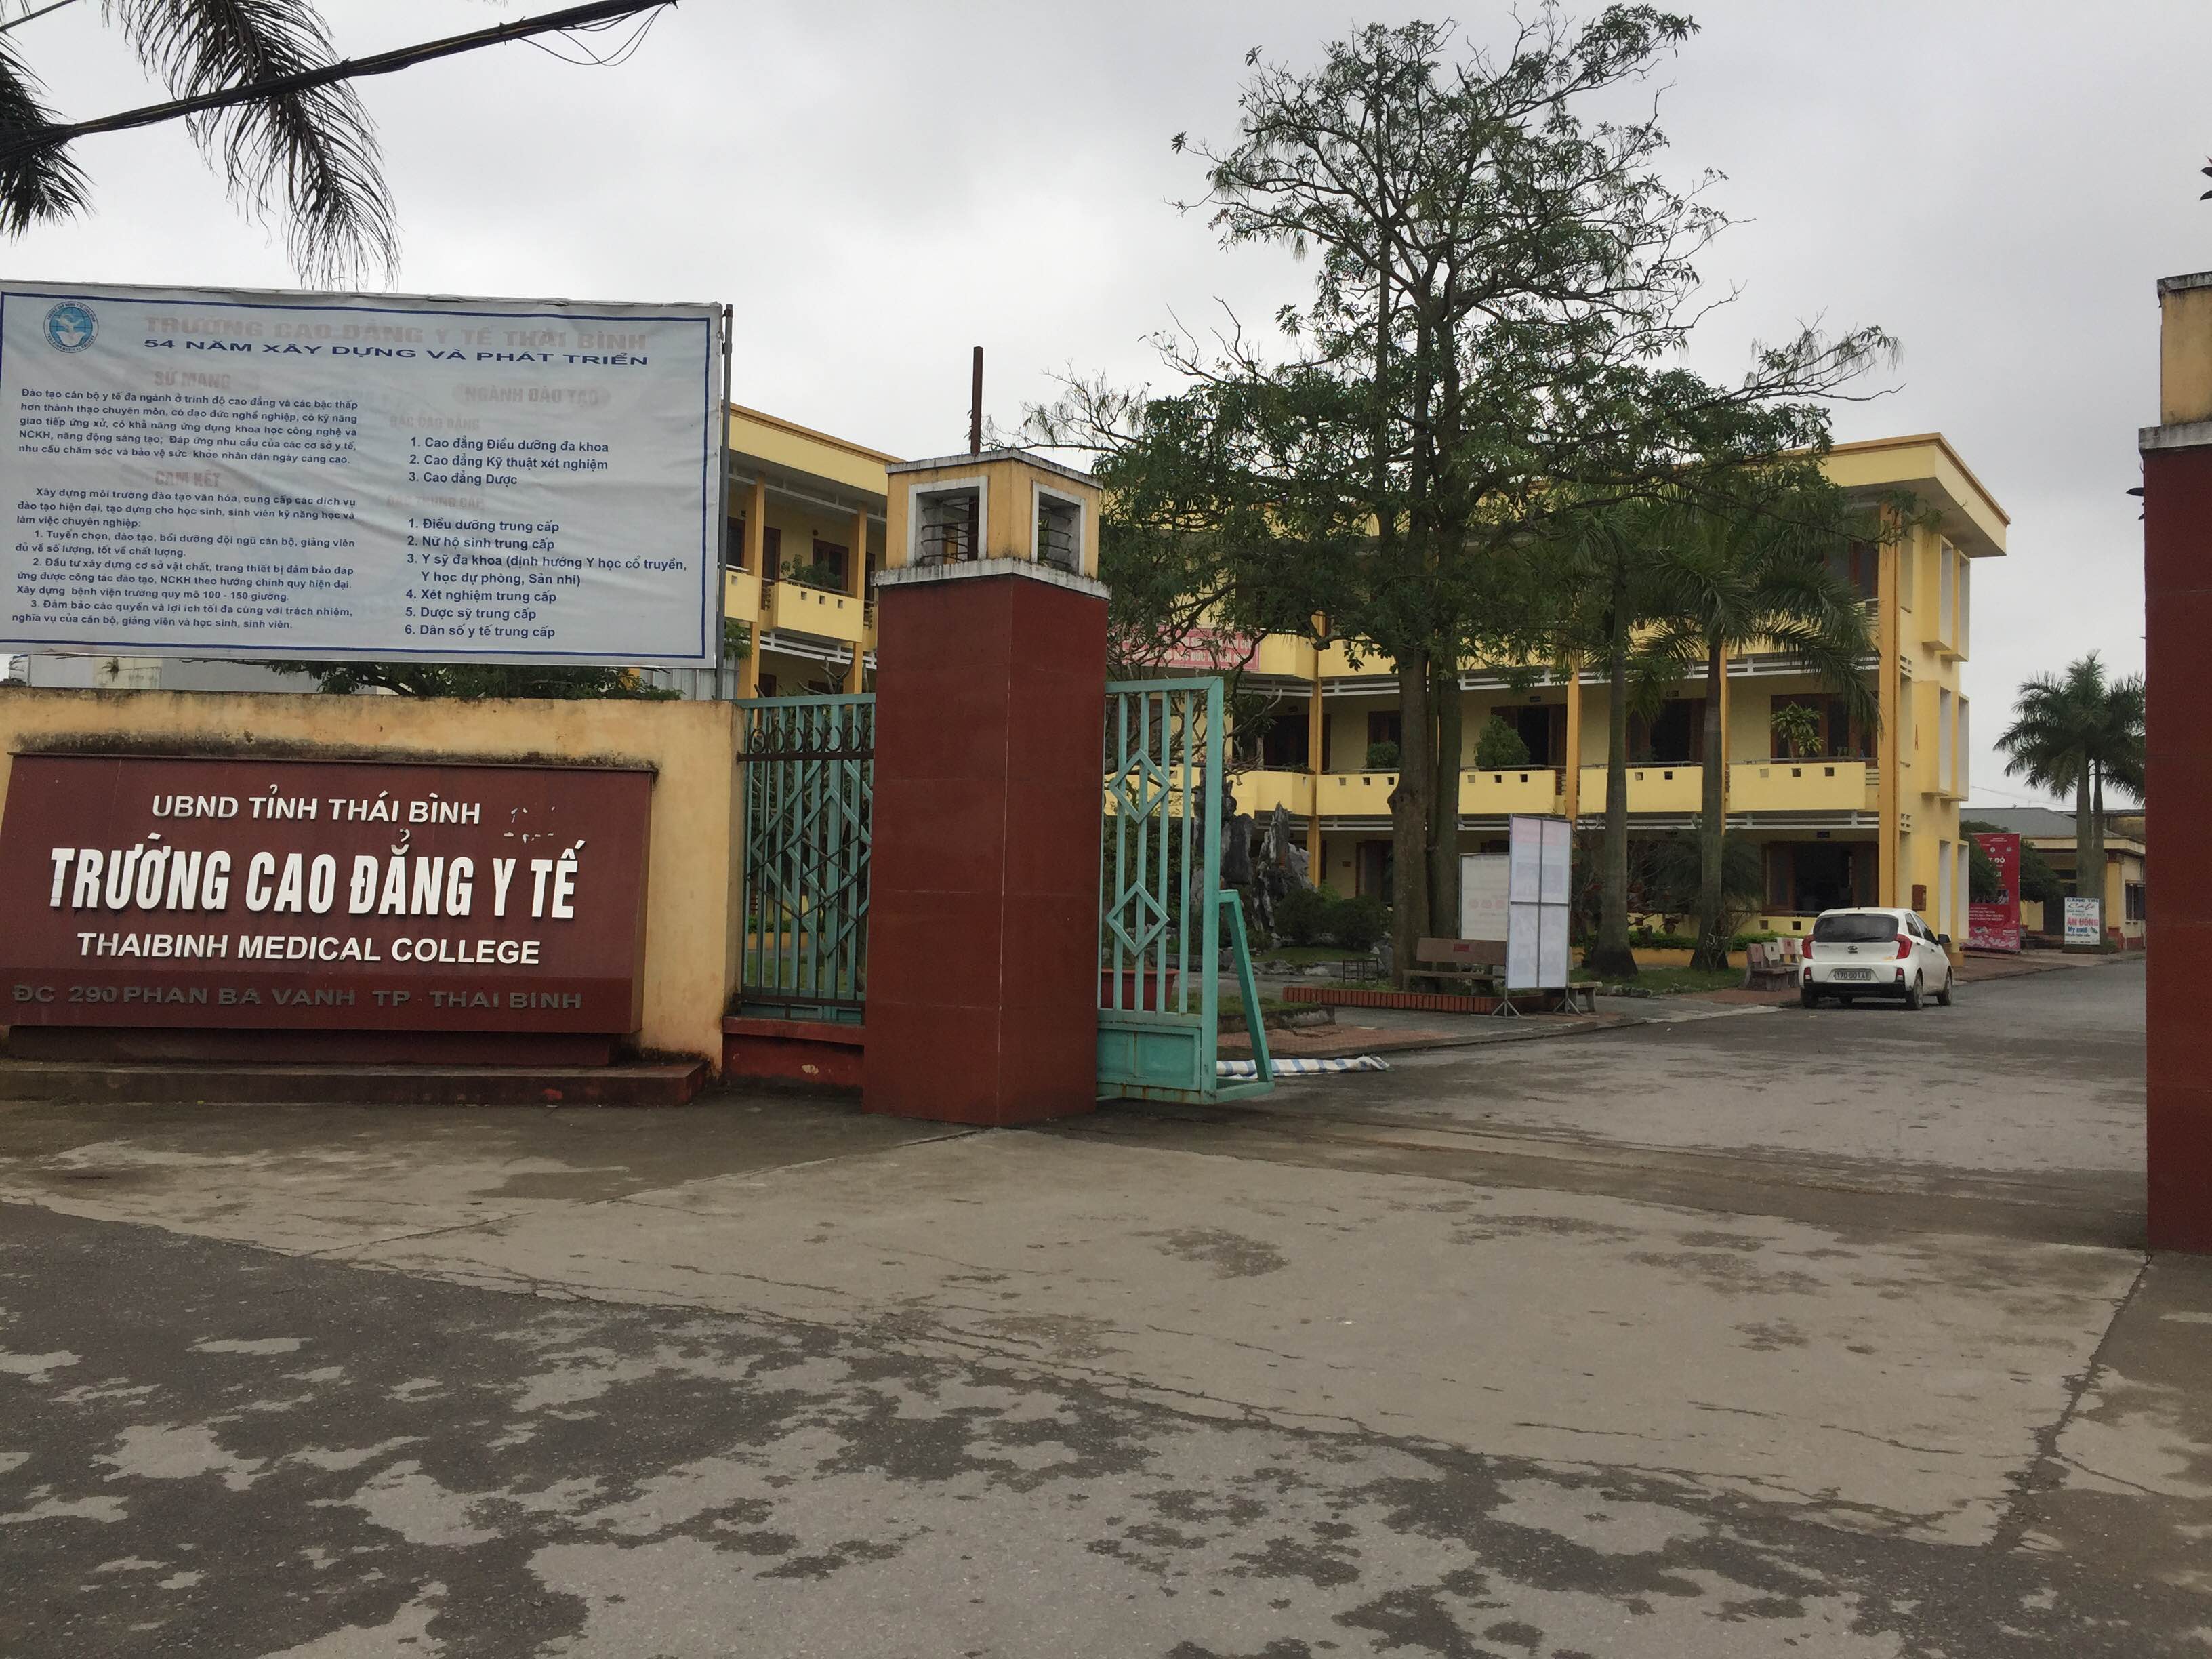 Trường Cao đẳng Y tế Thái Bình, nơi xảy ra vụ việc - Ảnh: Văn Đông